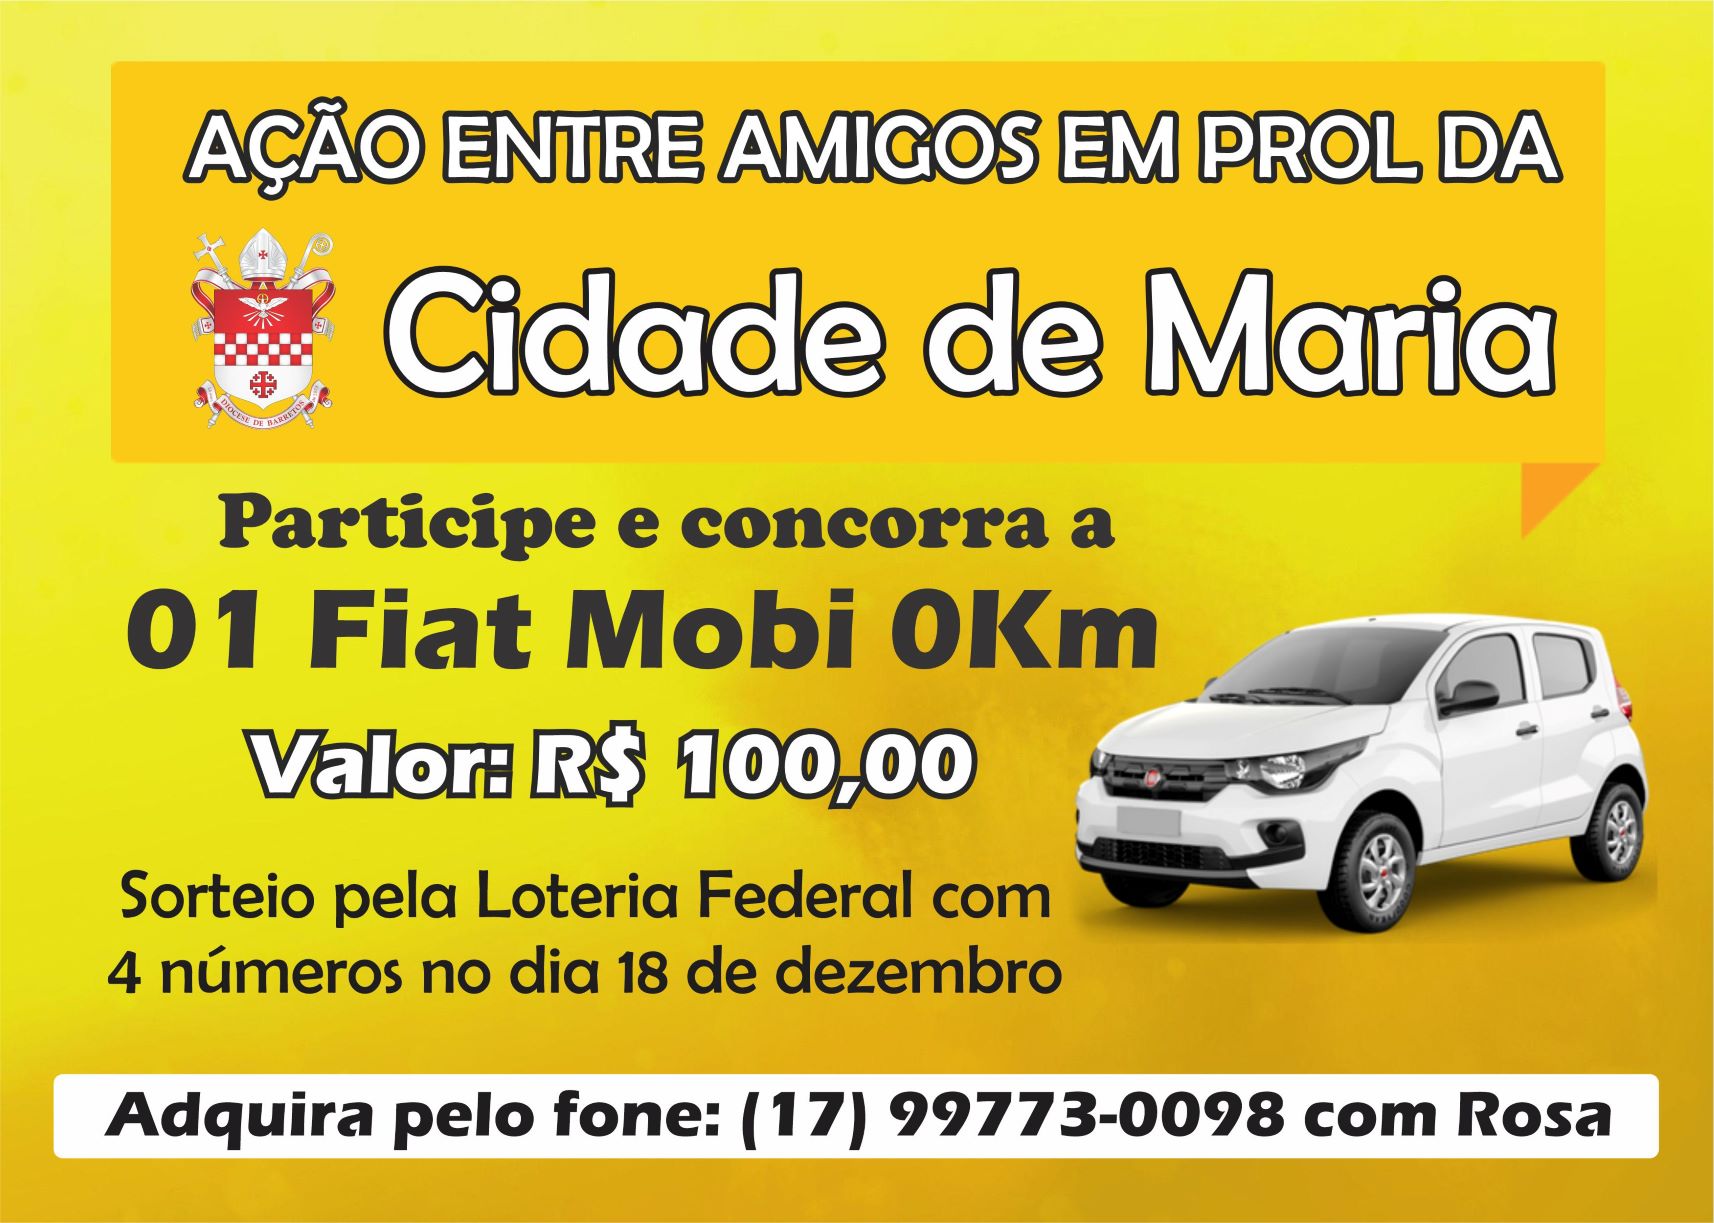 Foto | Cidade de Maria lança promoção de carro 0km para manutenção do local